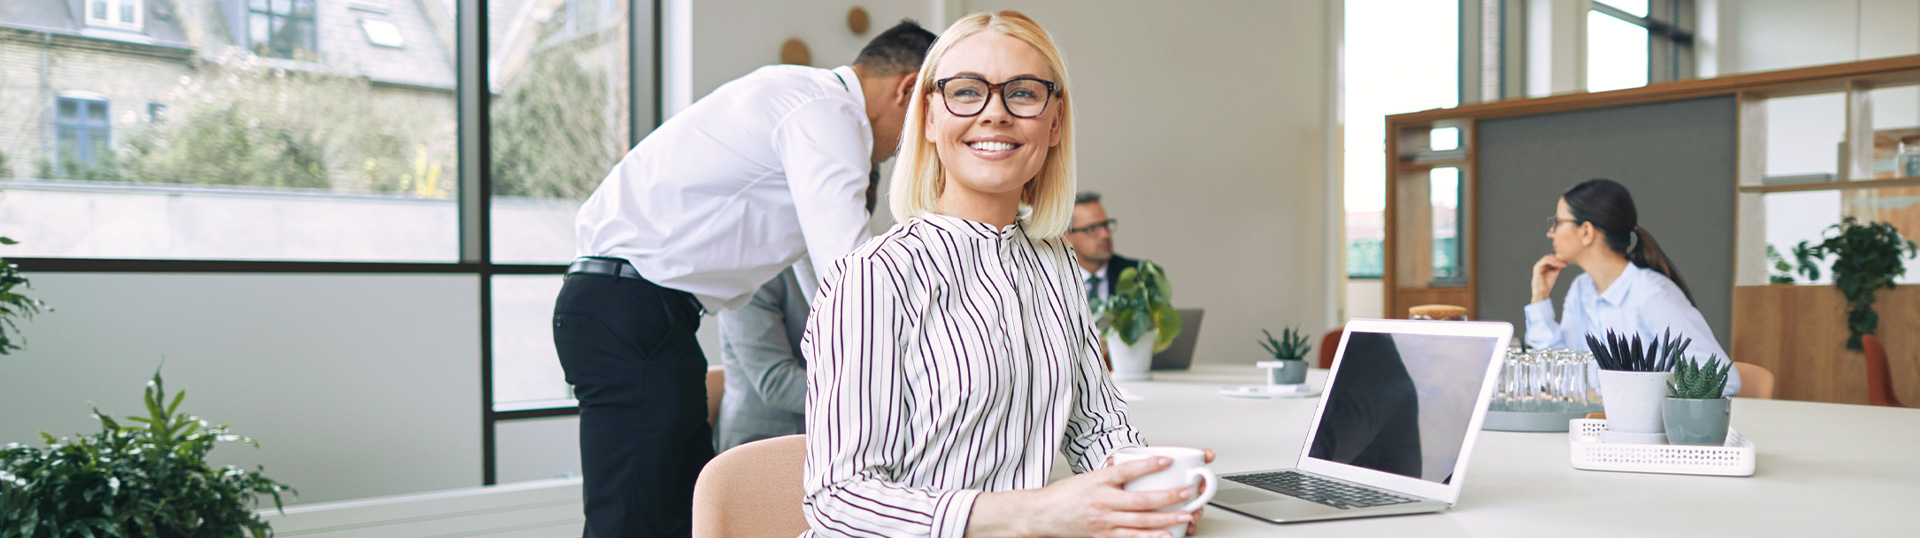 Lächelnde junge Frau sitzt mit Kaffeetasse an ihrem Arbeitsplatz